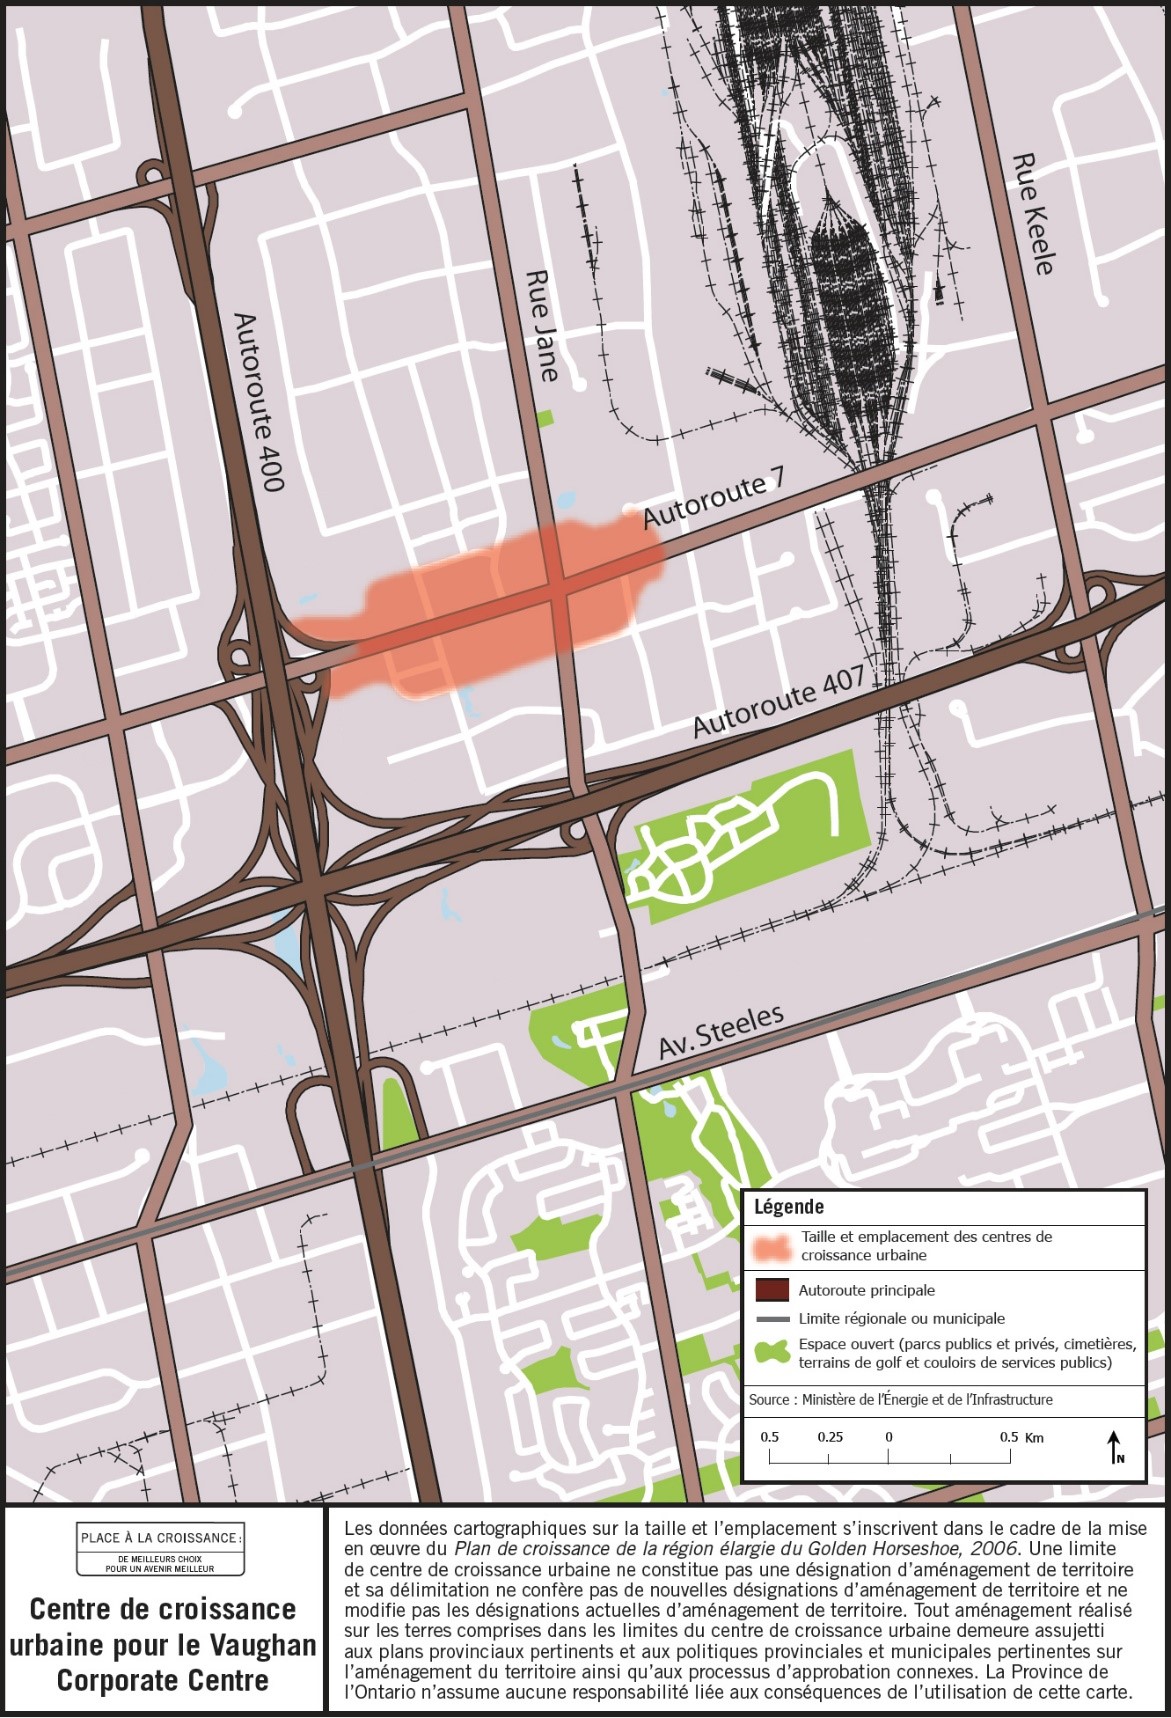 Carte de la taille et de l’emplacement approximatifs du centre de croissance urbaine de Vaughan Corporate Center situé à proximité de la rue Jane et de la route 7.